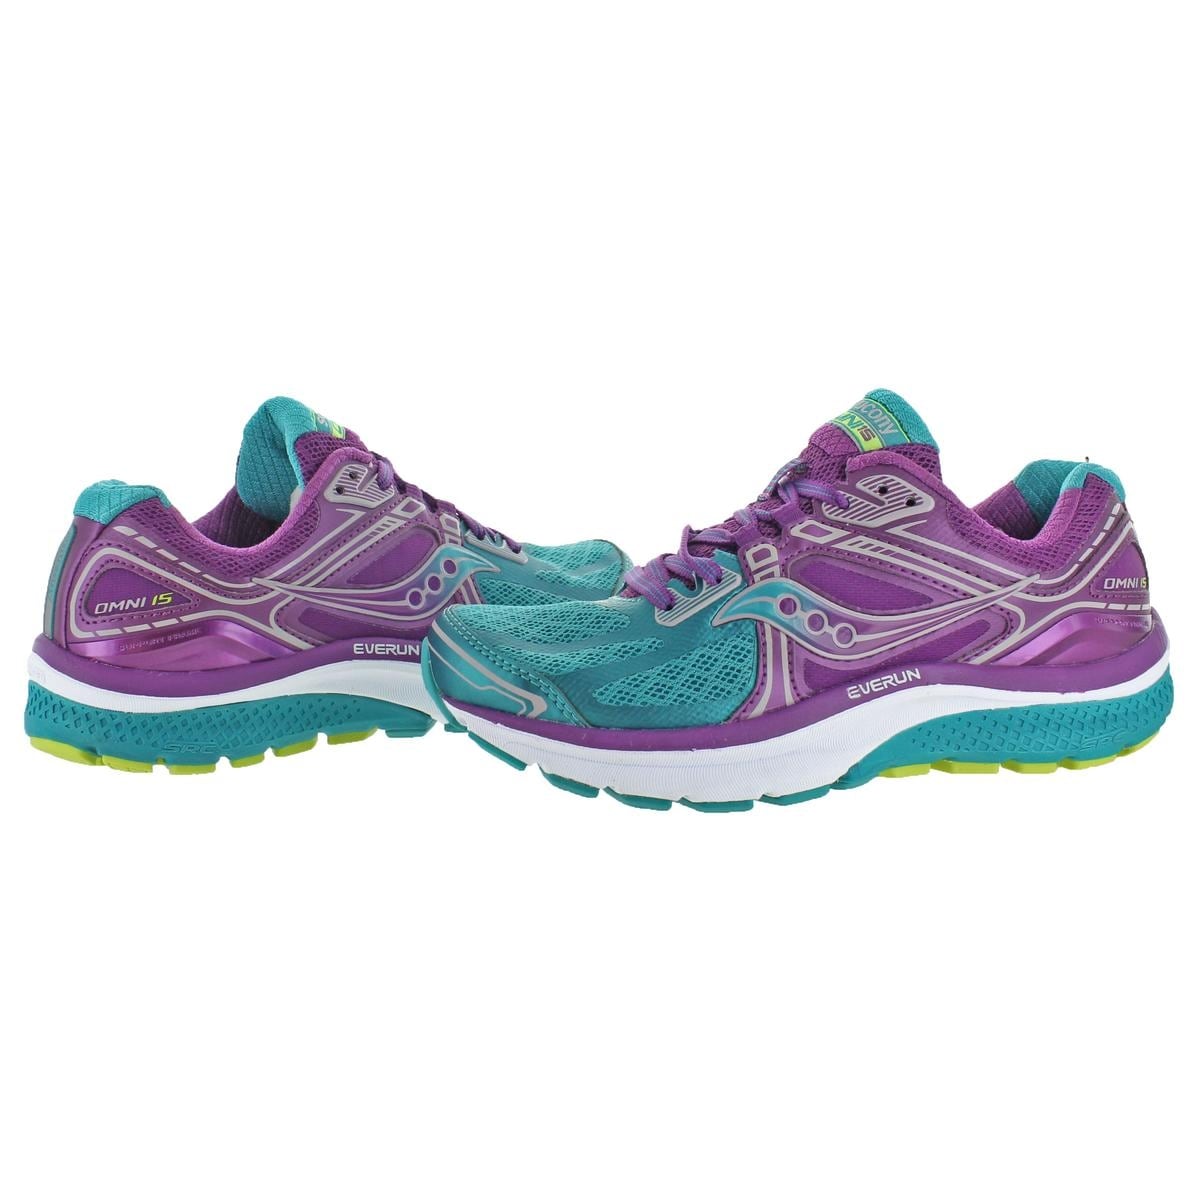 saucony omni 15 women's running shoes